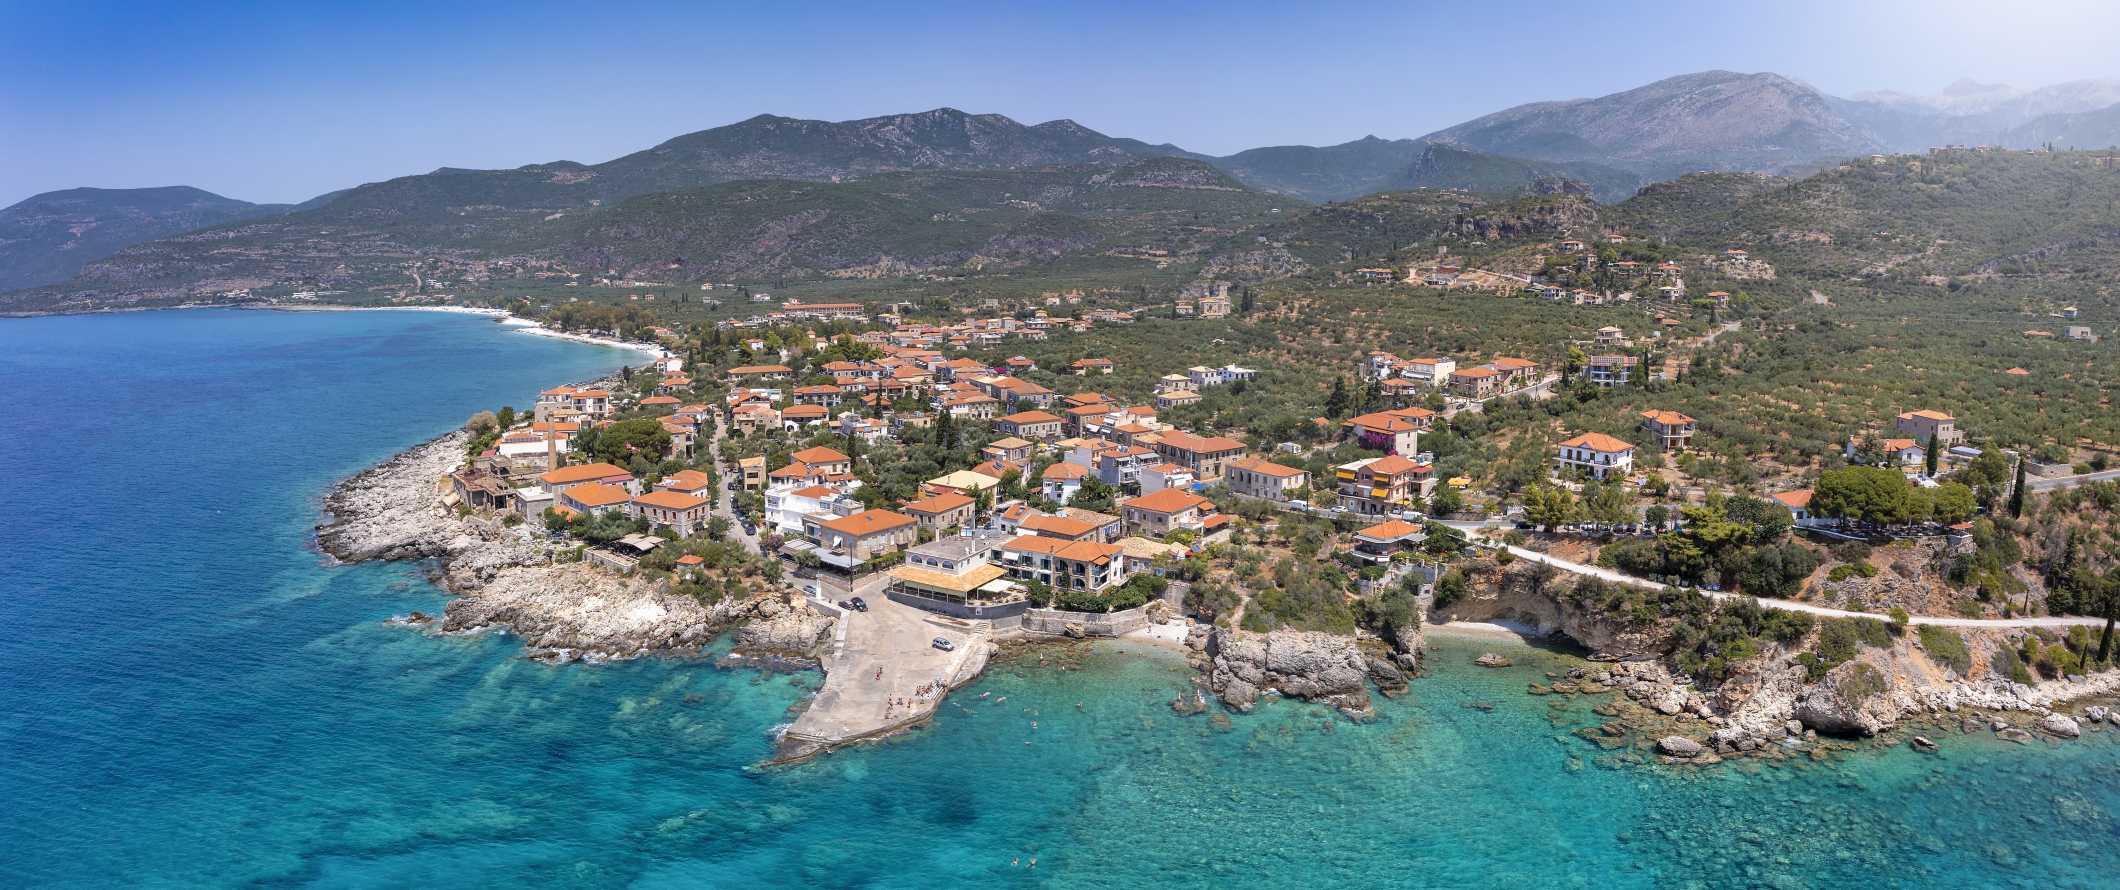 地中海沿岸希腊小镇的鸟瞰图，背景是山脉